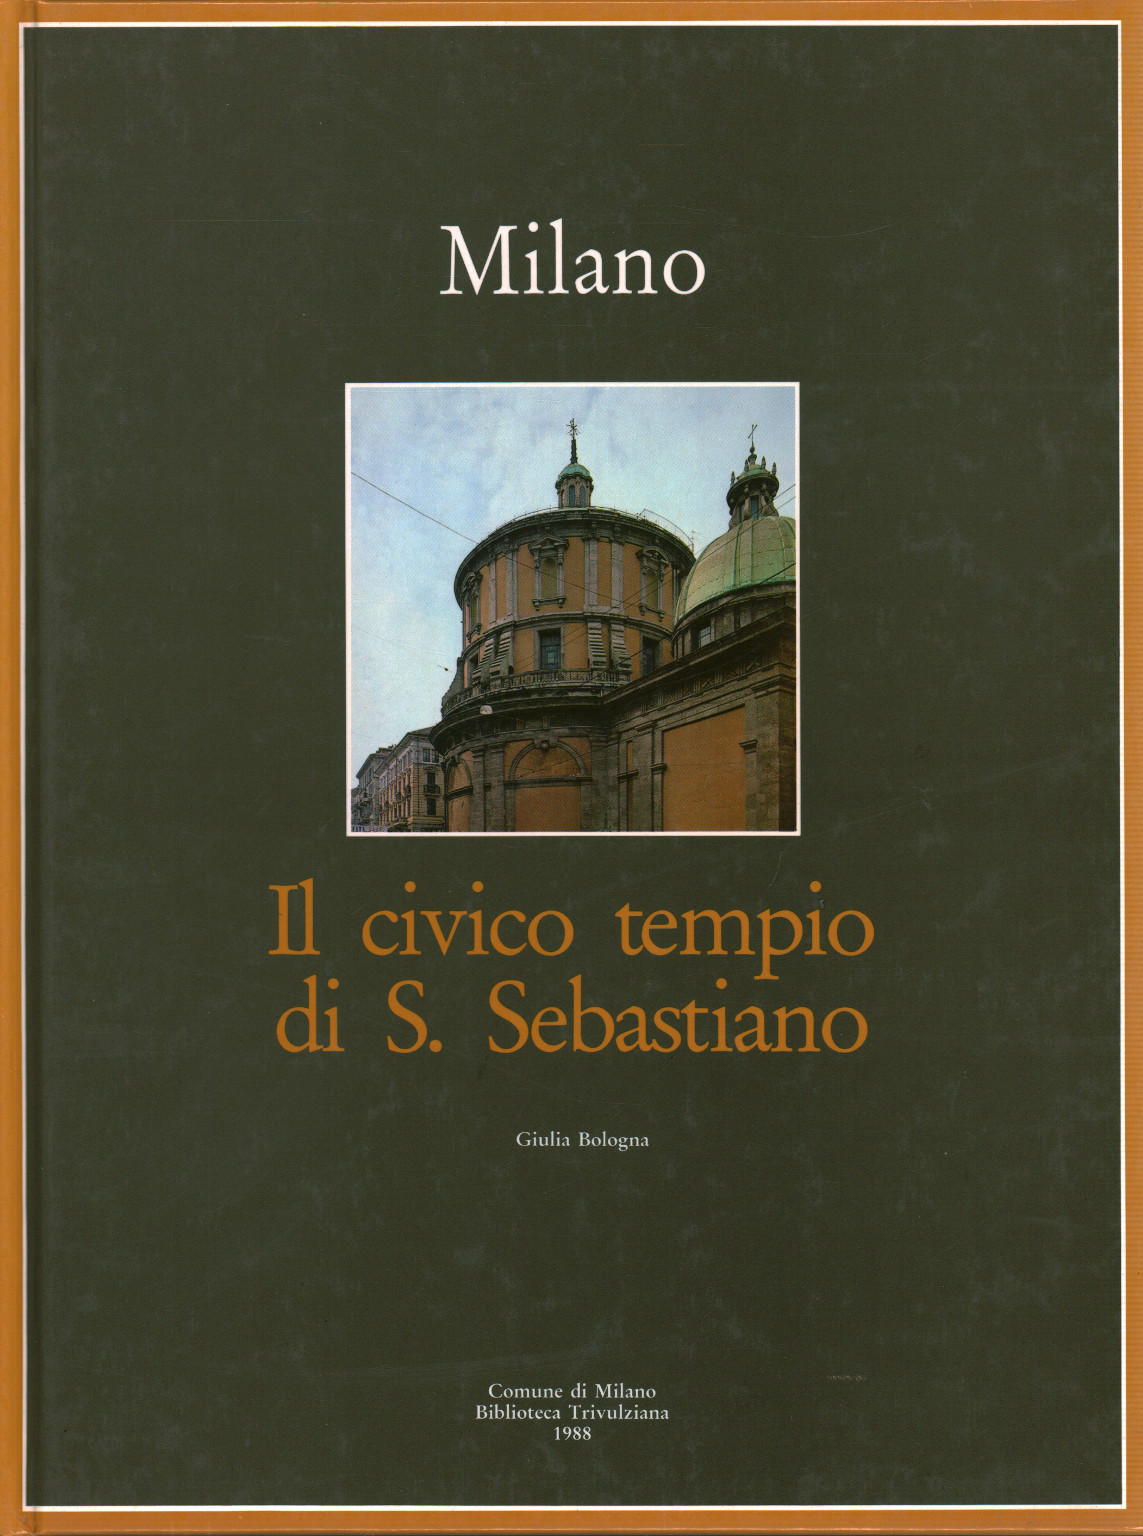 Milano. Il civico tempio di S. Sebastiano, s.a.